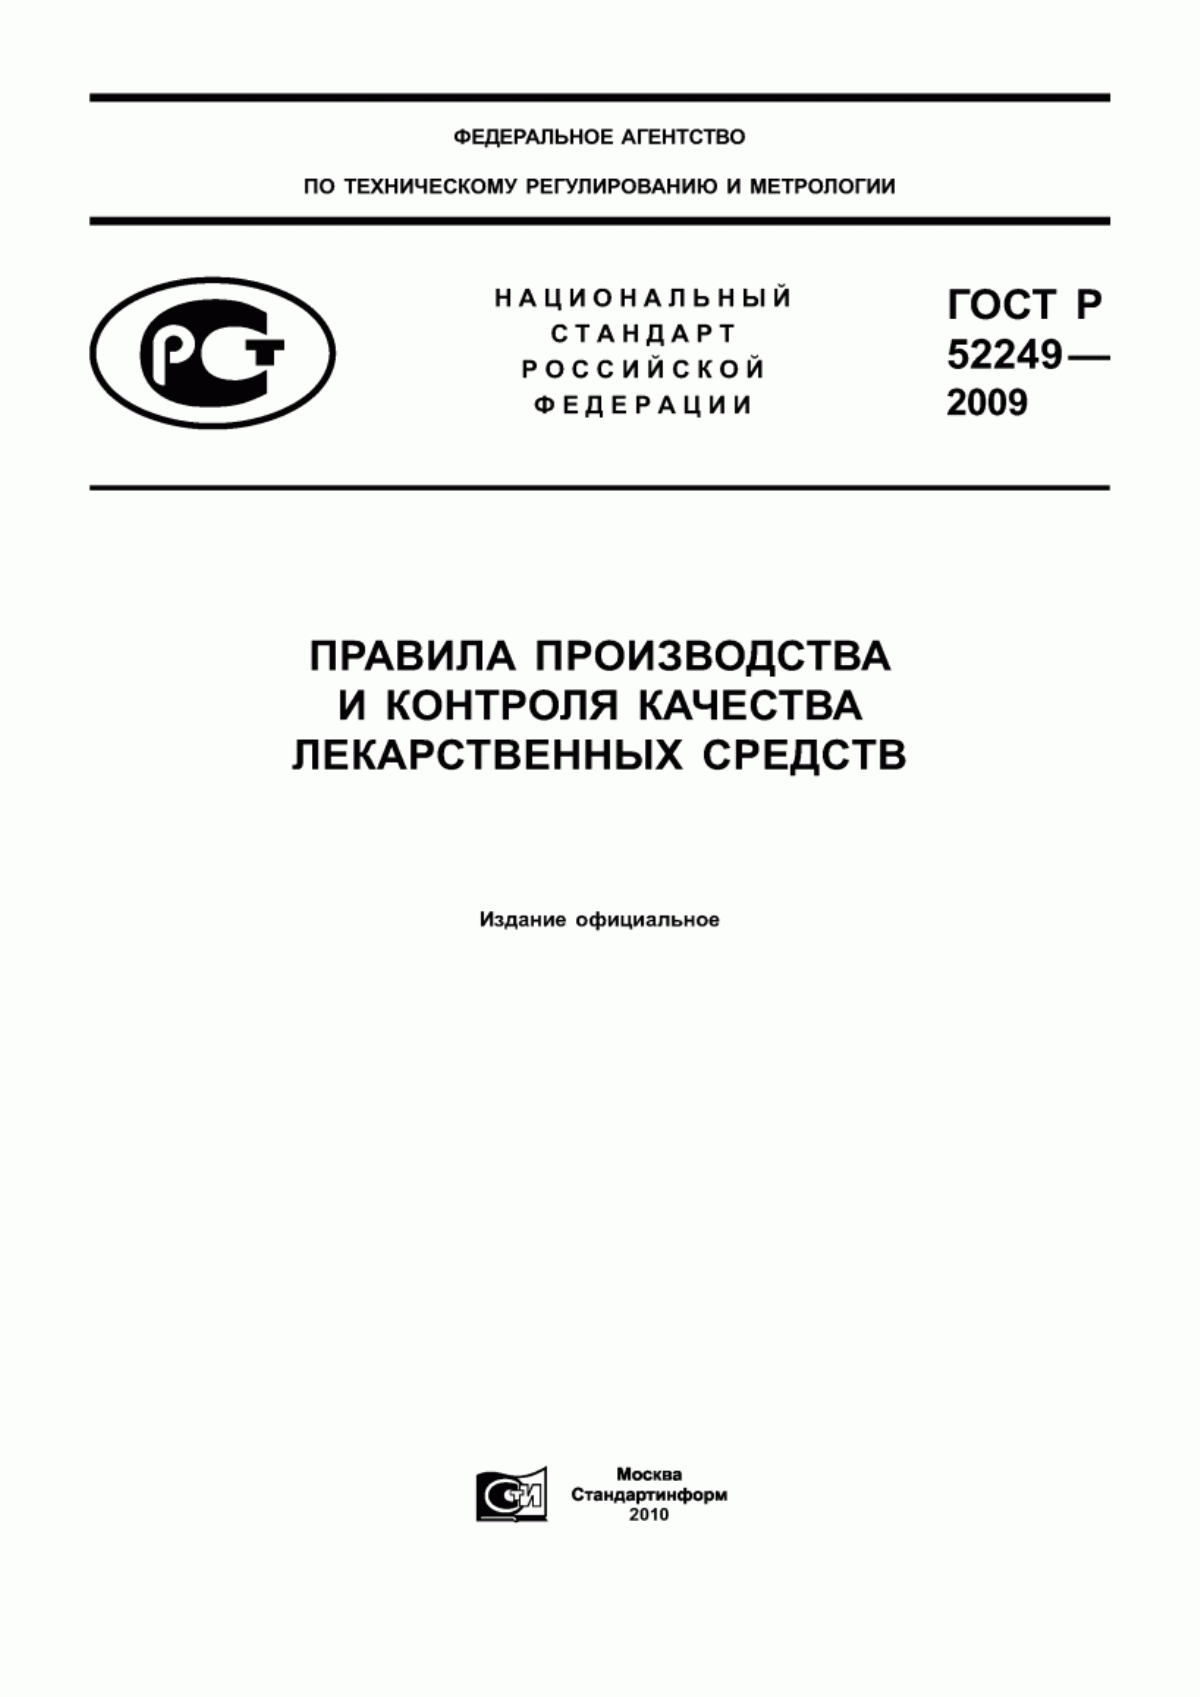 ГОСТ Р 52249-2009 Правила производства и контроля качества лекарственных средств